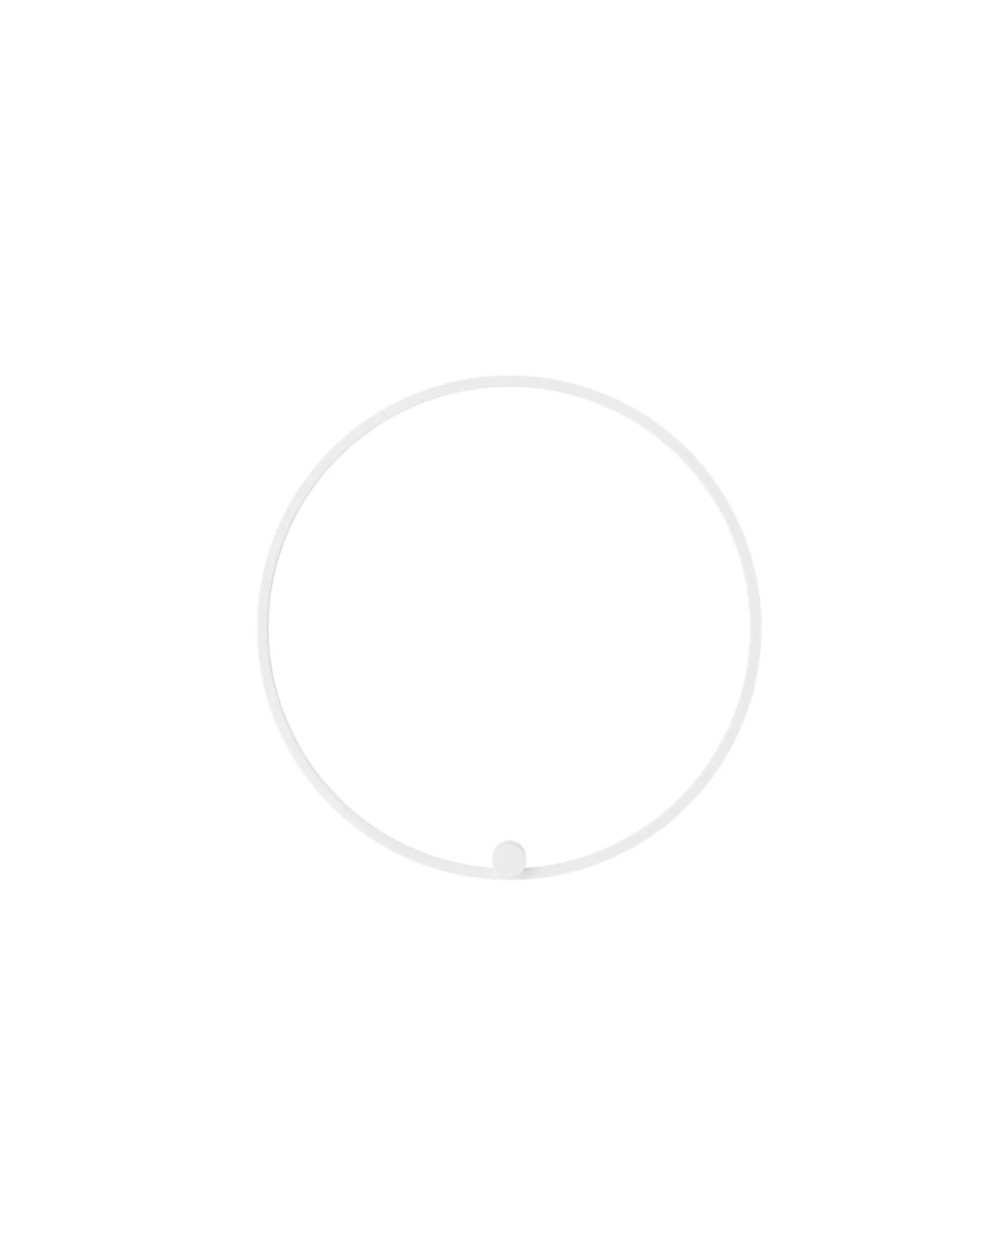 Kinkiet Ringa L 1xLED biały WL0116-L-WH